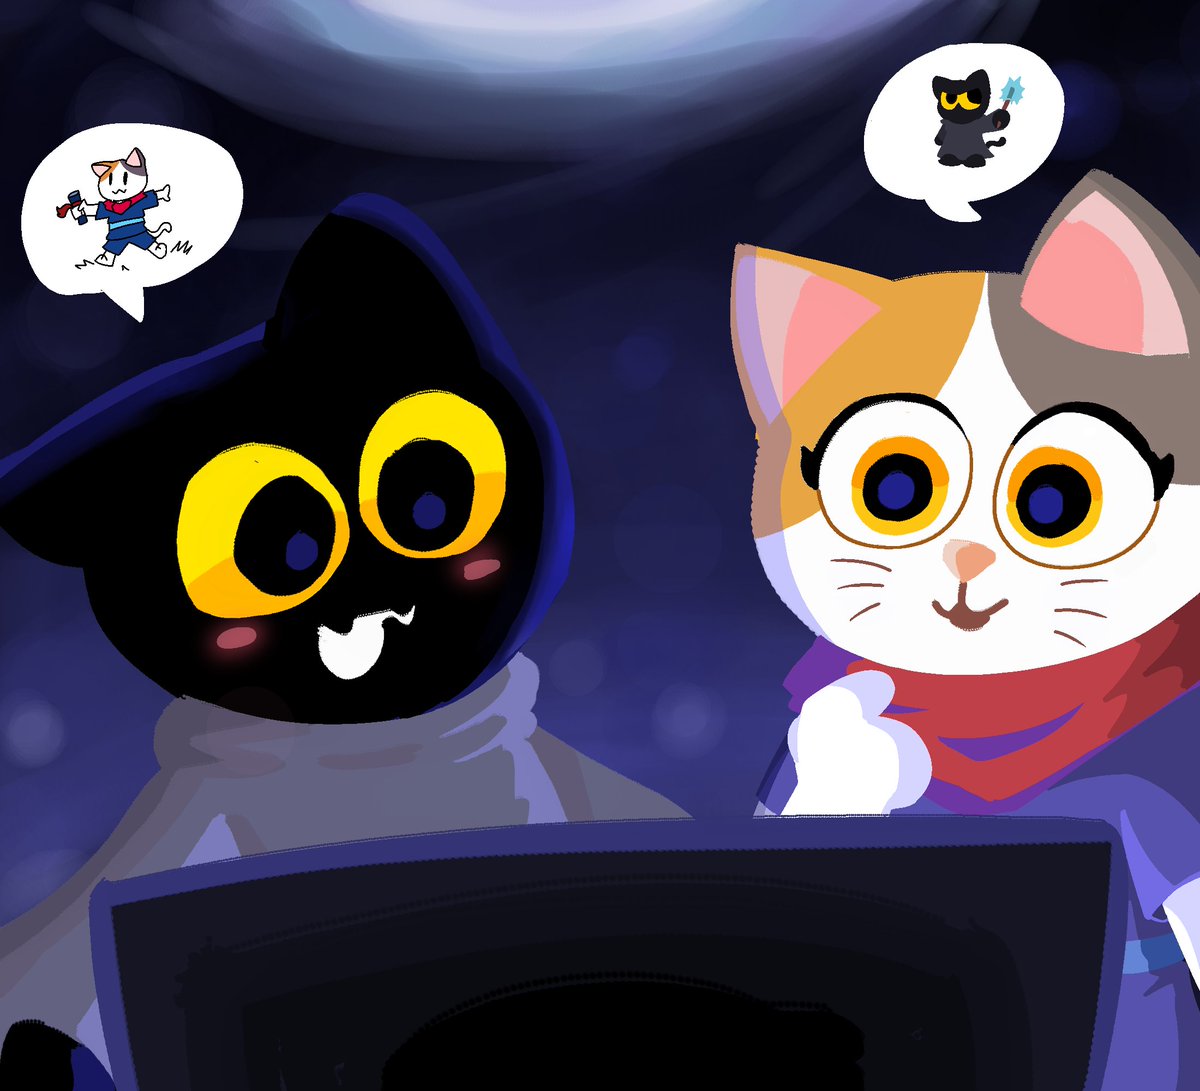 Google Doodle Cat Game 2020 by DatOrangeNinja on DeviantArt